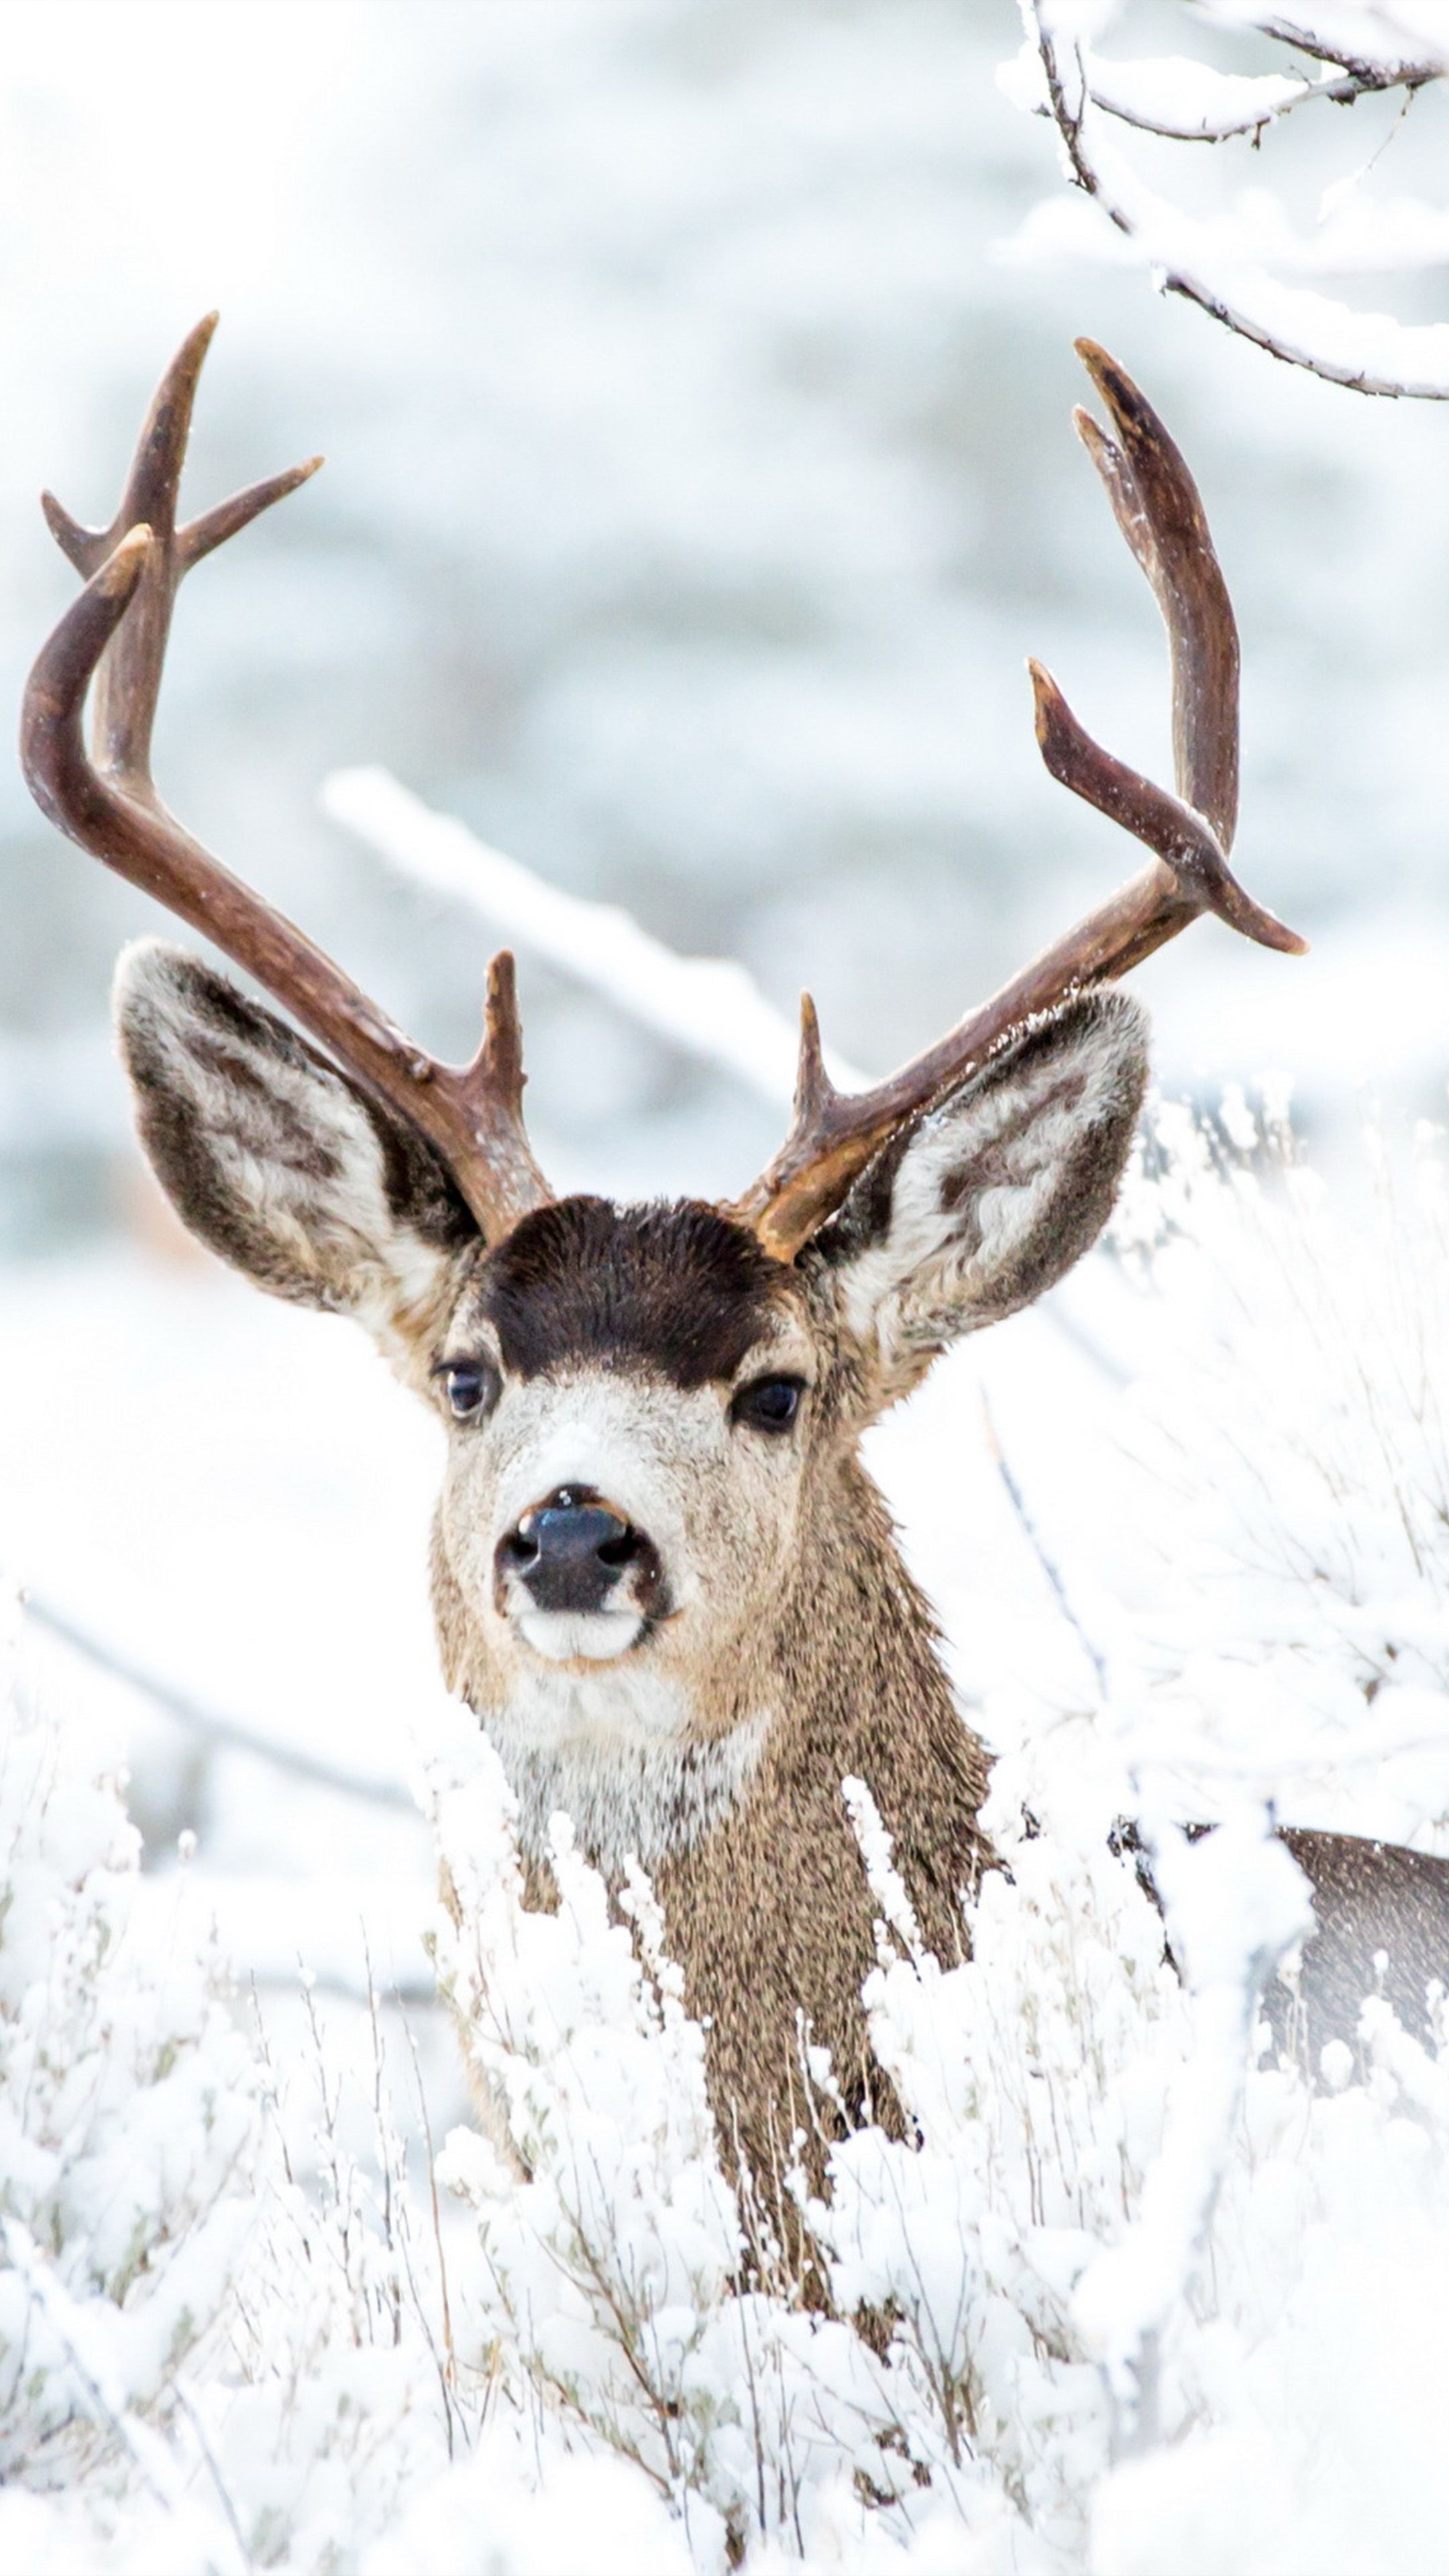 Snowy deer, Breathtaking scenery, Winter tranquility, Majestic wildlife, 2160x3840 4K Handy